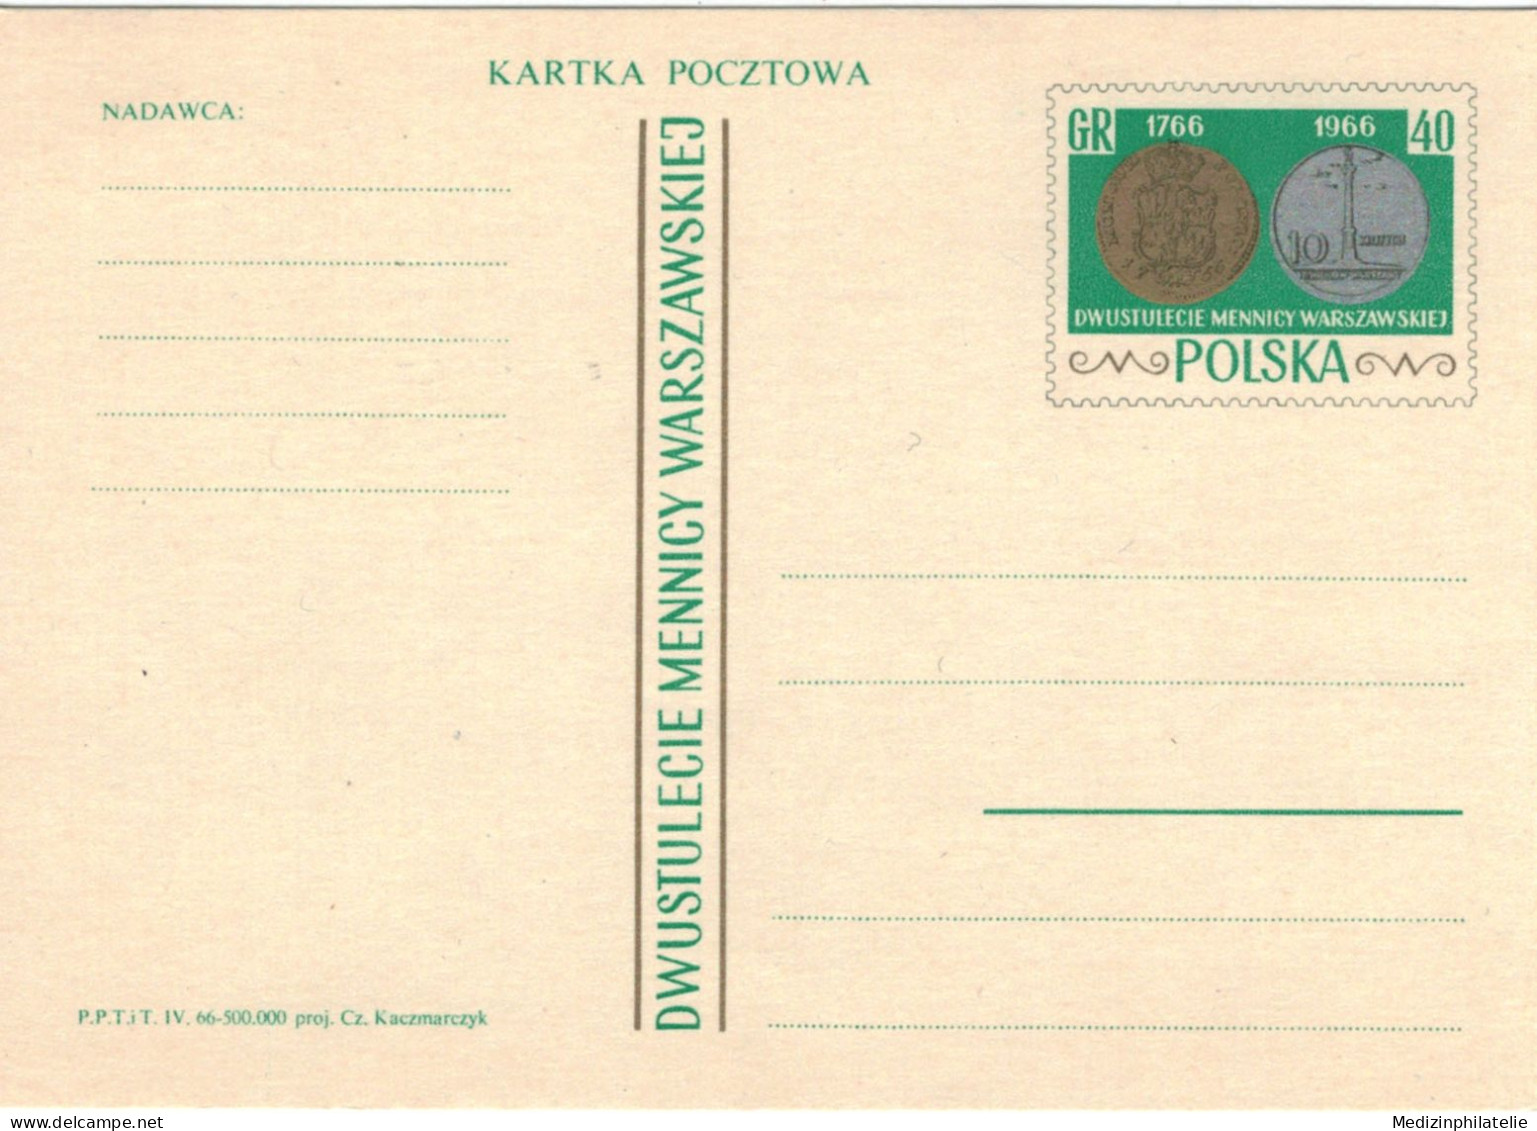 Ganzsache Ungebraucht Goldmünze (?) Auf Briefmarke - 1766 1966 - Minerals